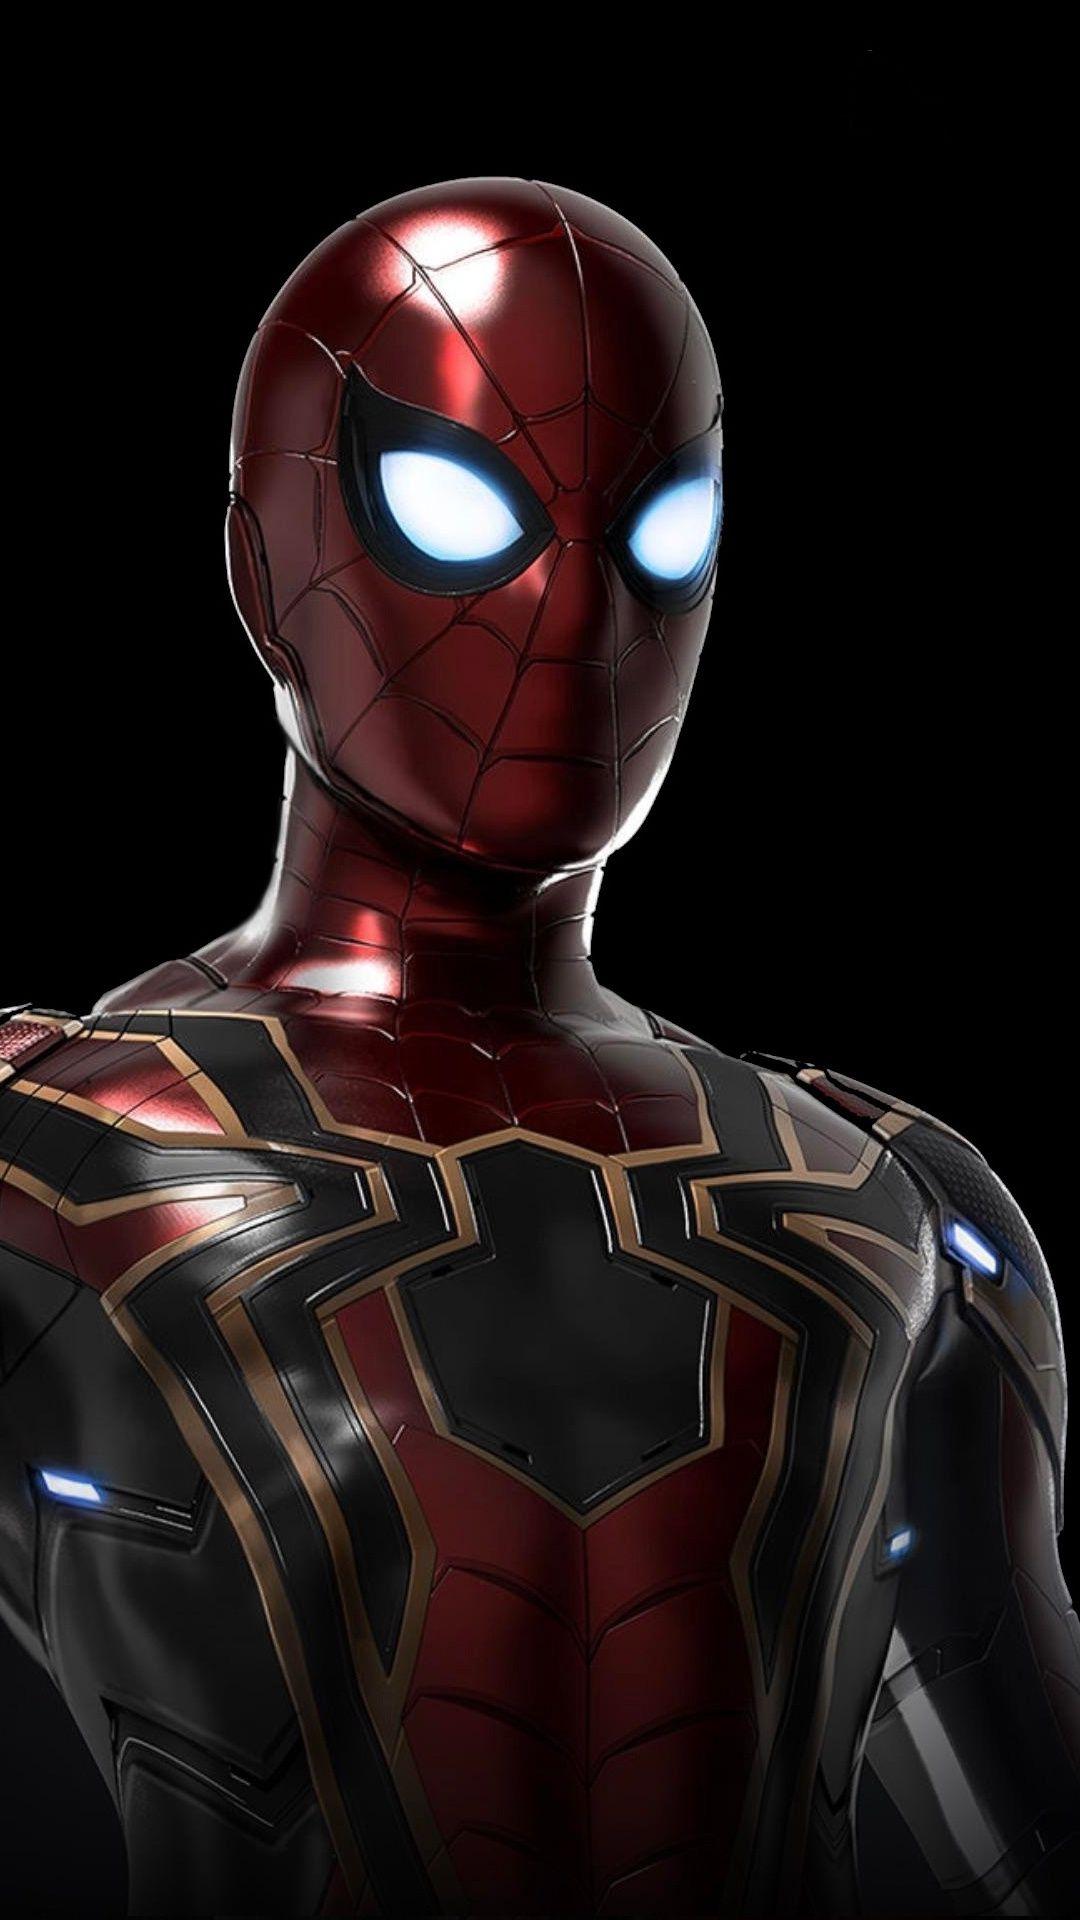 Iron Spider, Avengers: Infinity War, Movie, Artwork, 1080x1920 Wallpaper. Spiderman, Amazing Spiderman, Iron Spider